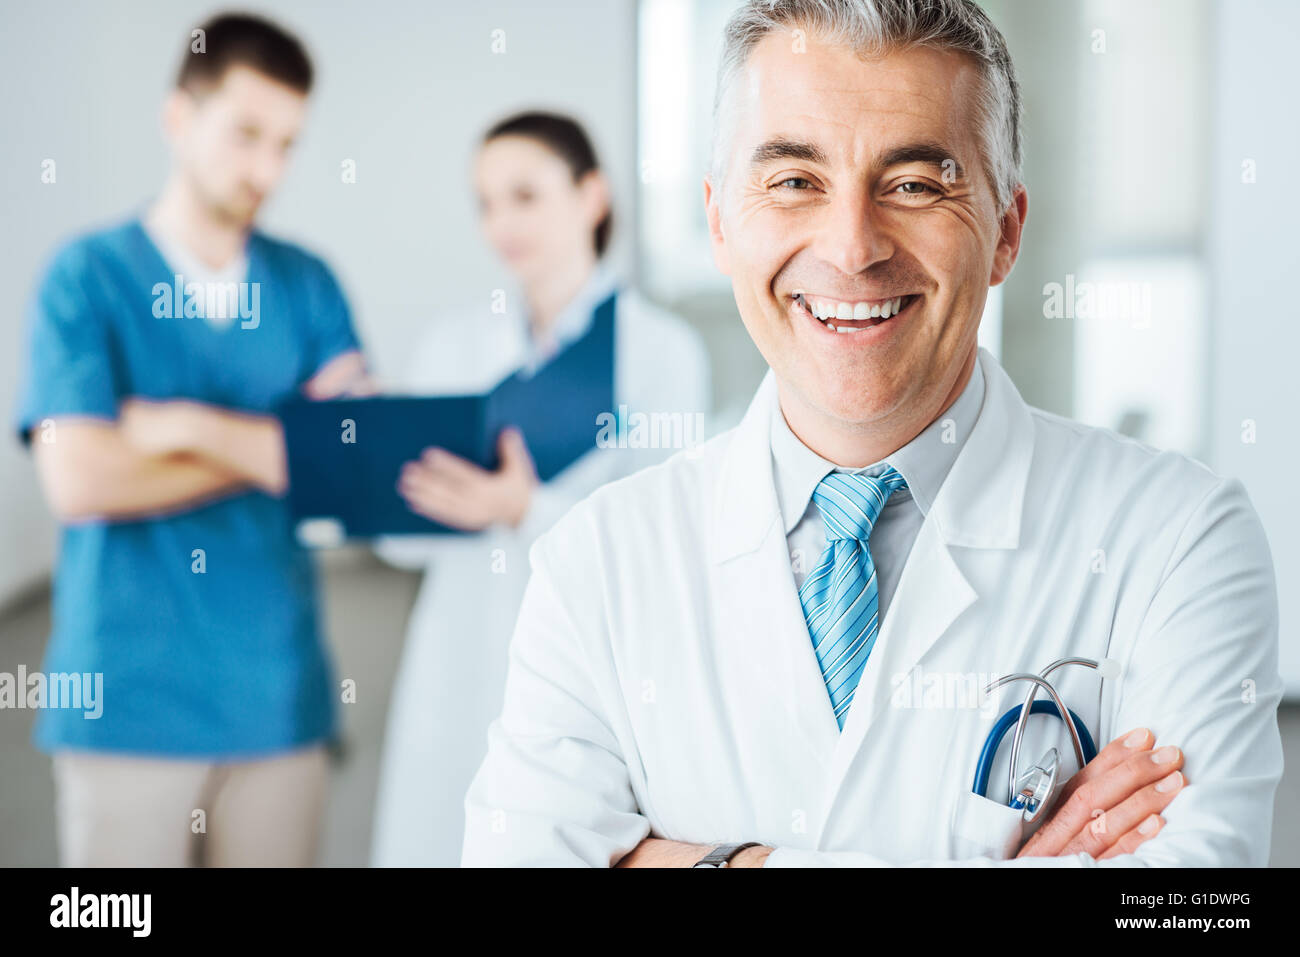 Confiant doctor posing and smiling at camera et le personnel médical contrôle de dossiers médicaux sur l'arrière-plan Banque D'Images